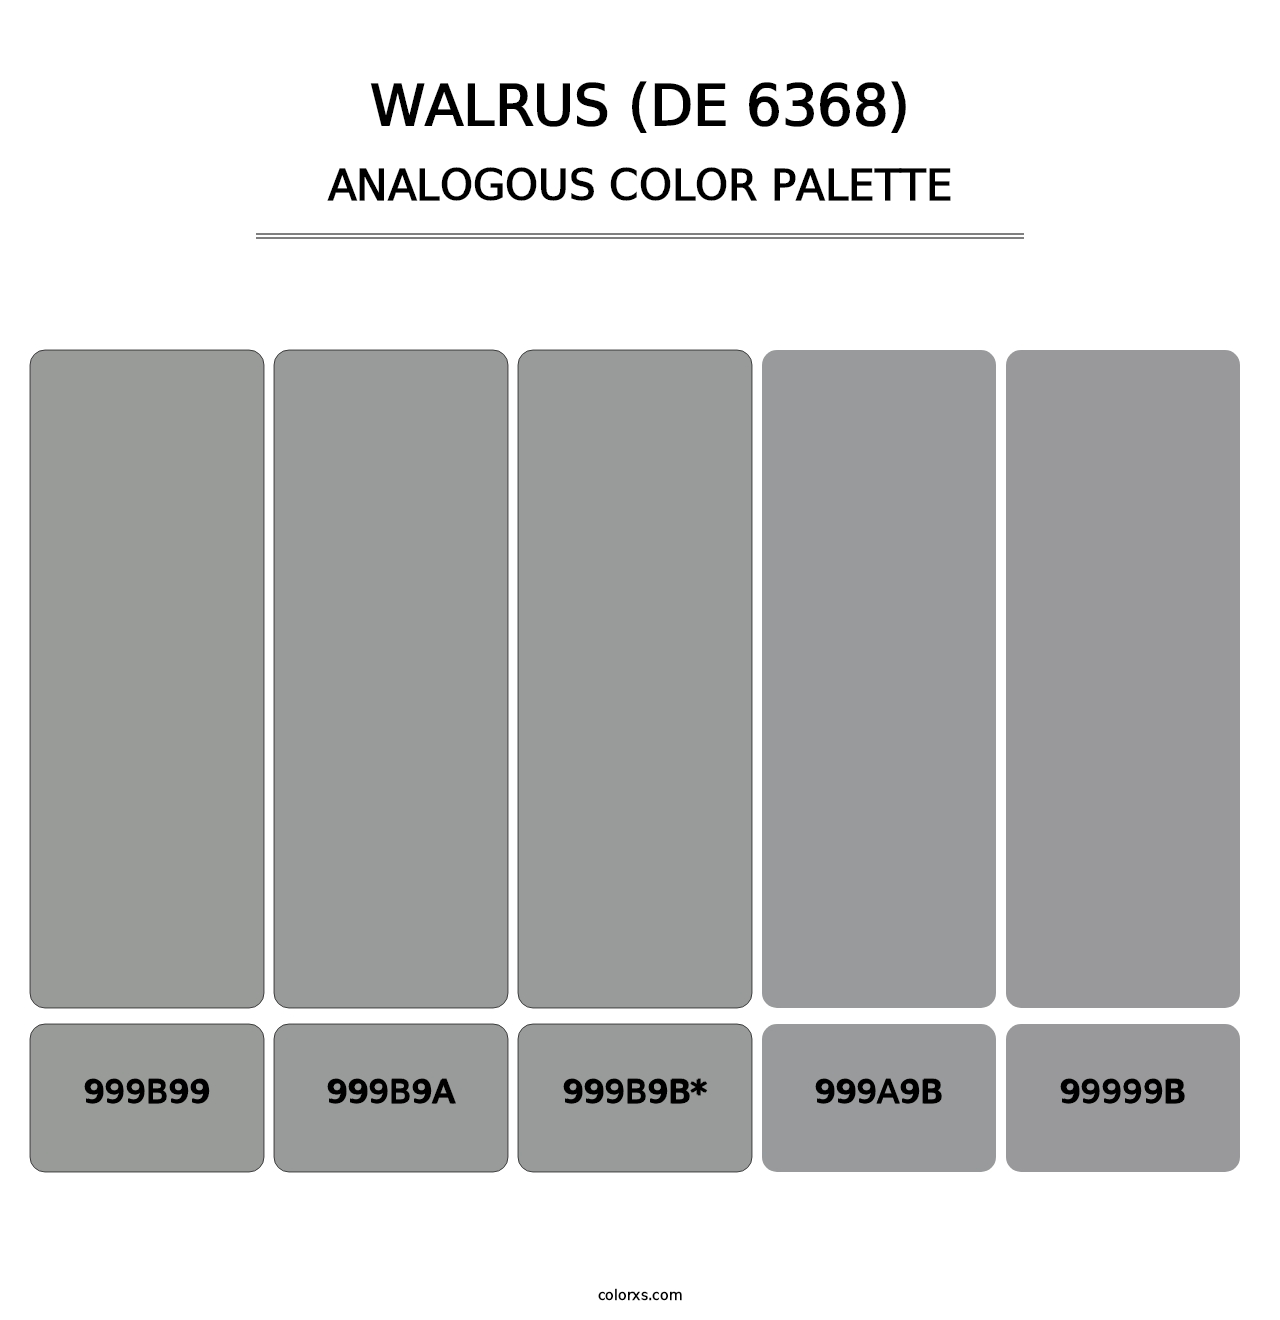 Walrus (DE 6368) - Analogous Color Palette